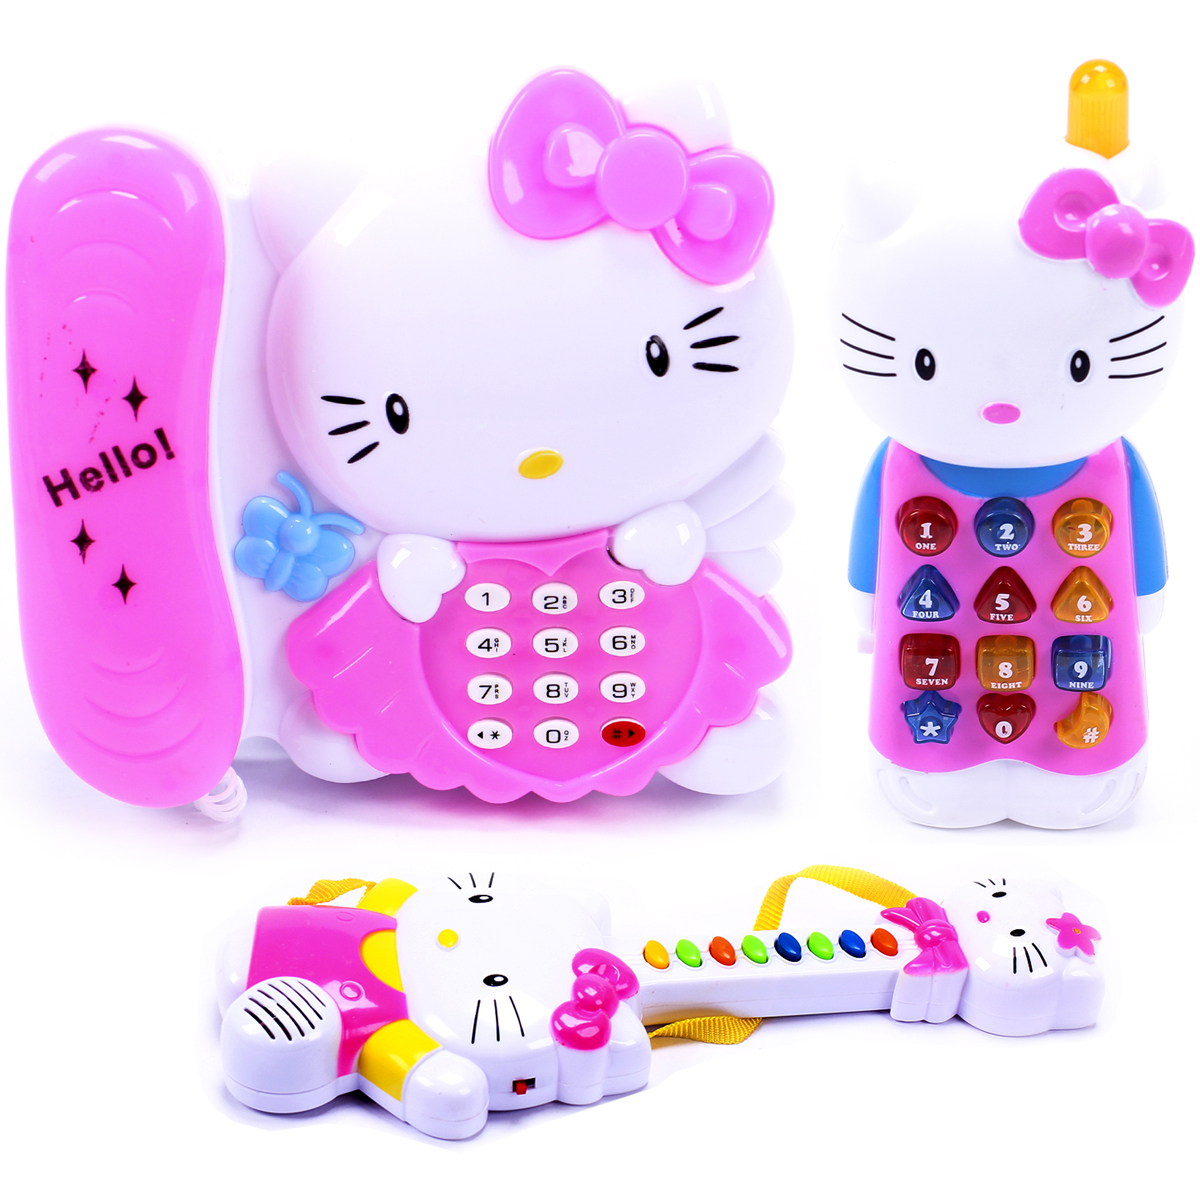 Bộ đồ chơi điện thoại và đàn cho em bé Hello kitty 1203